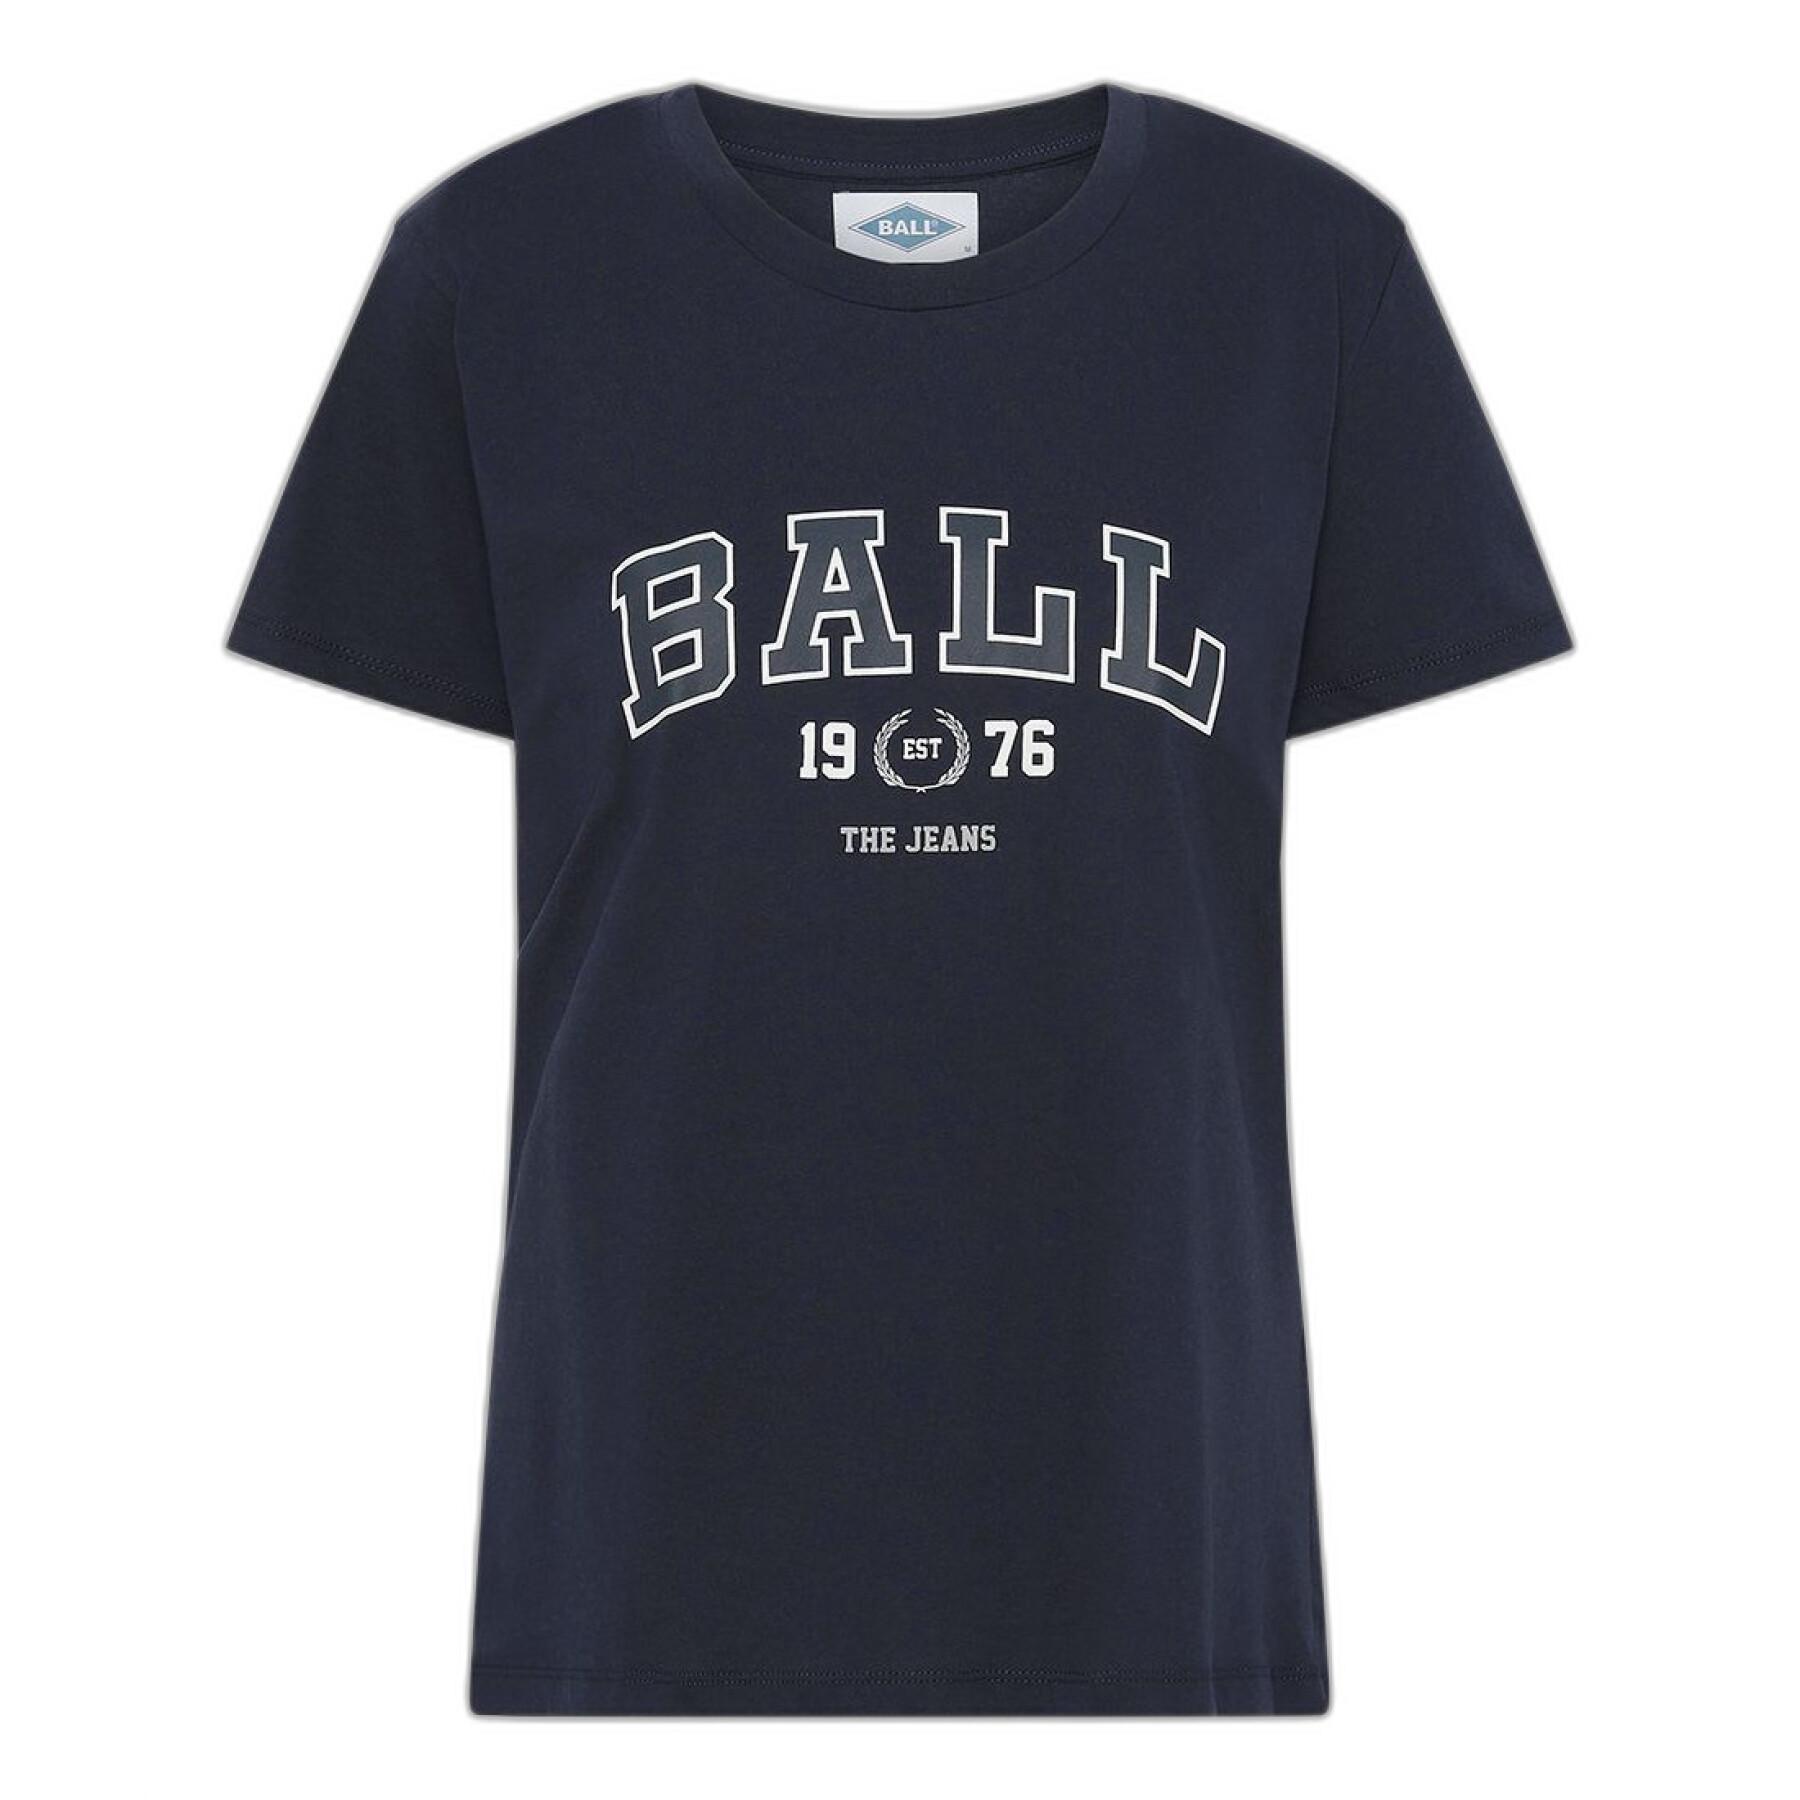 T-Shirt Frau Ball J. Elway